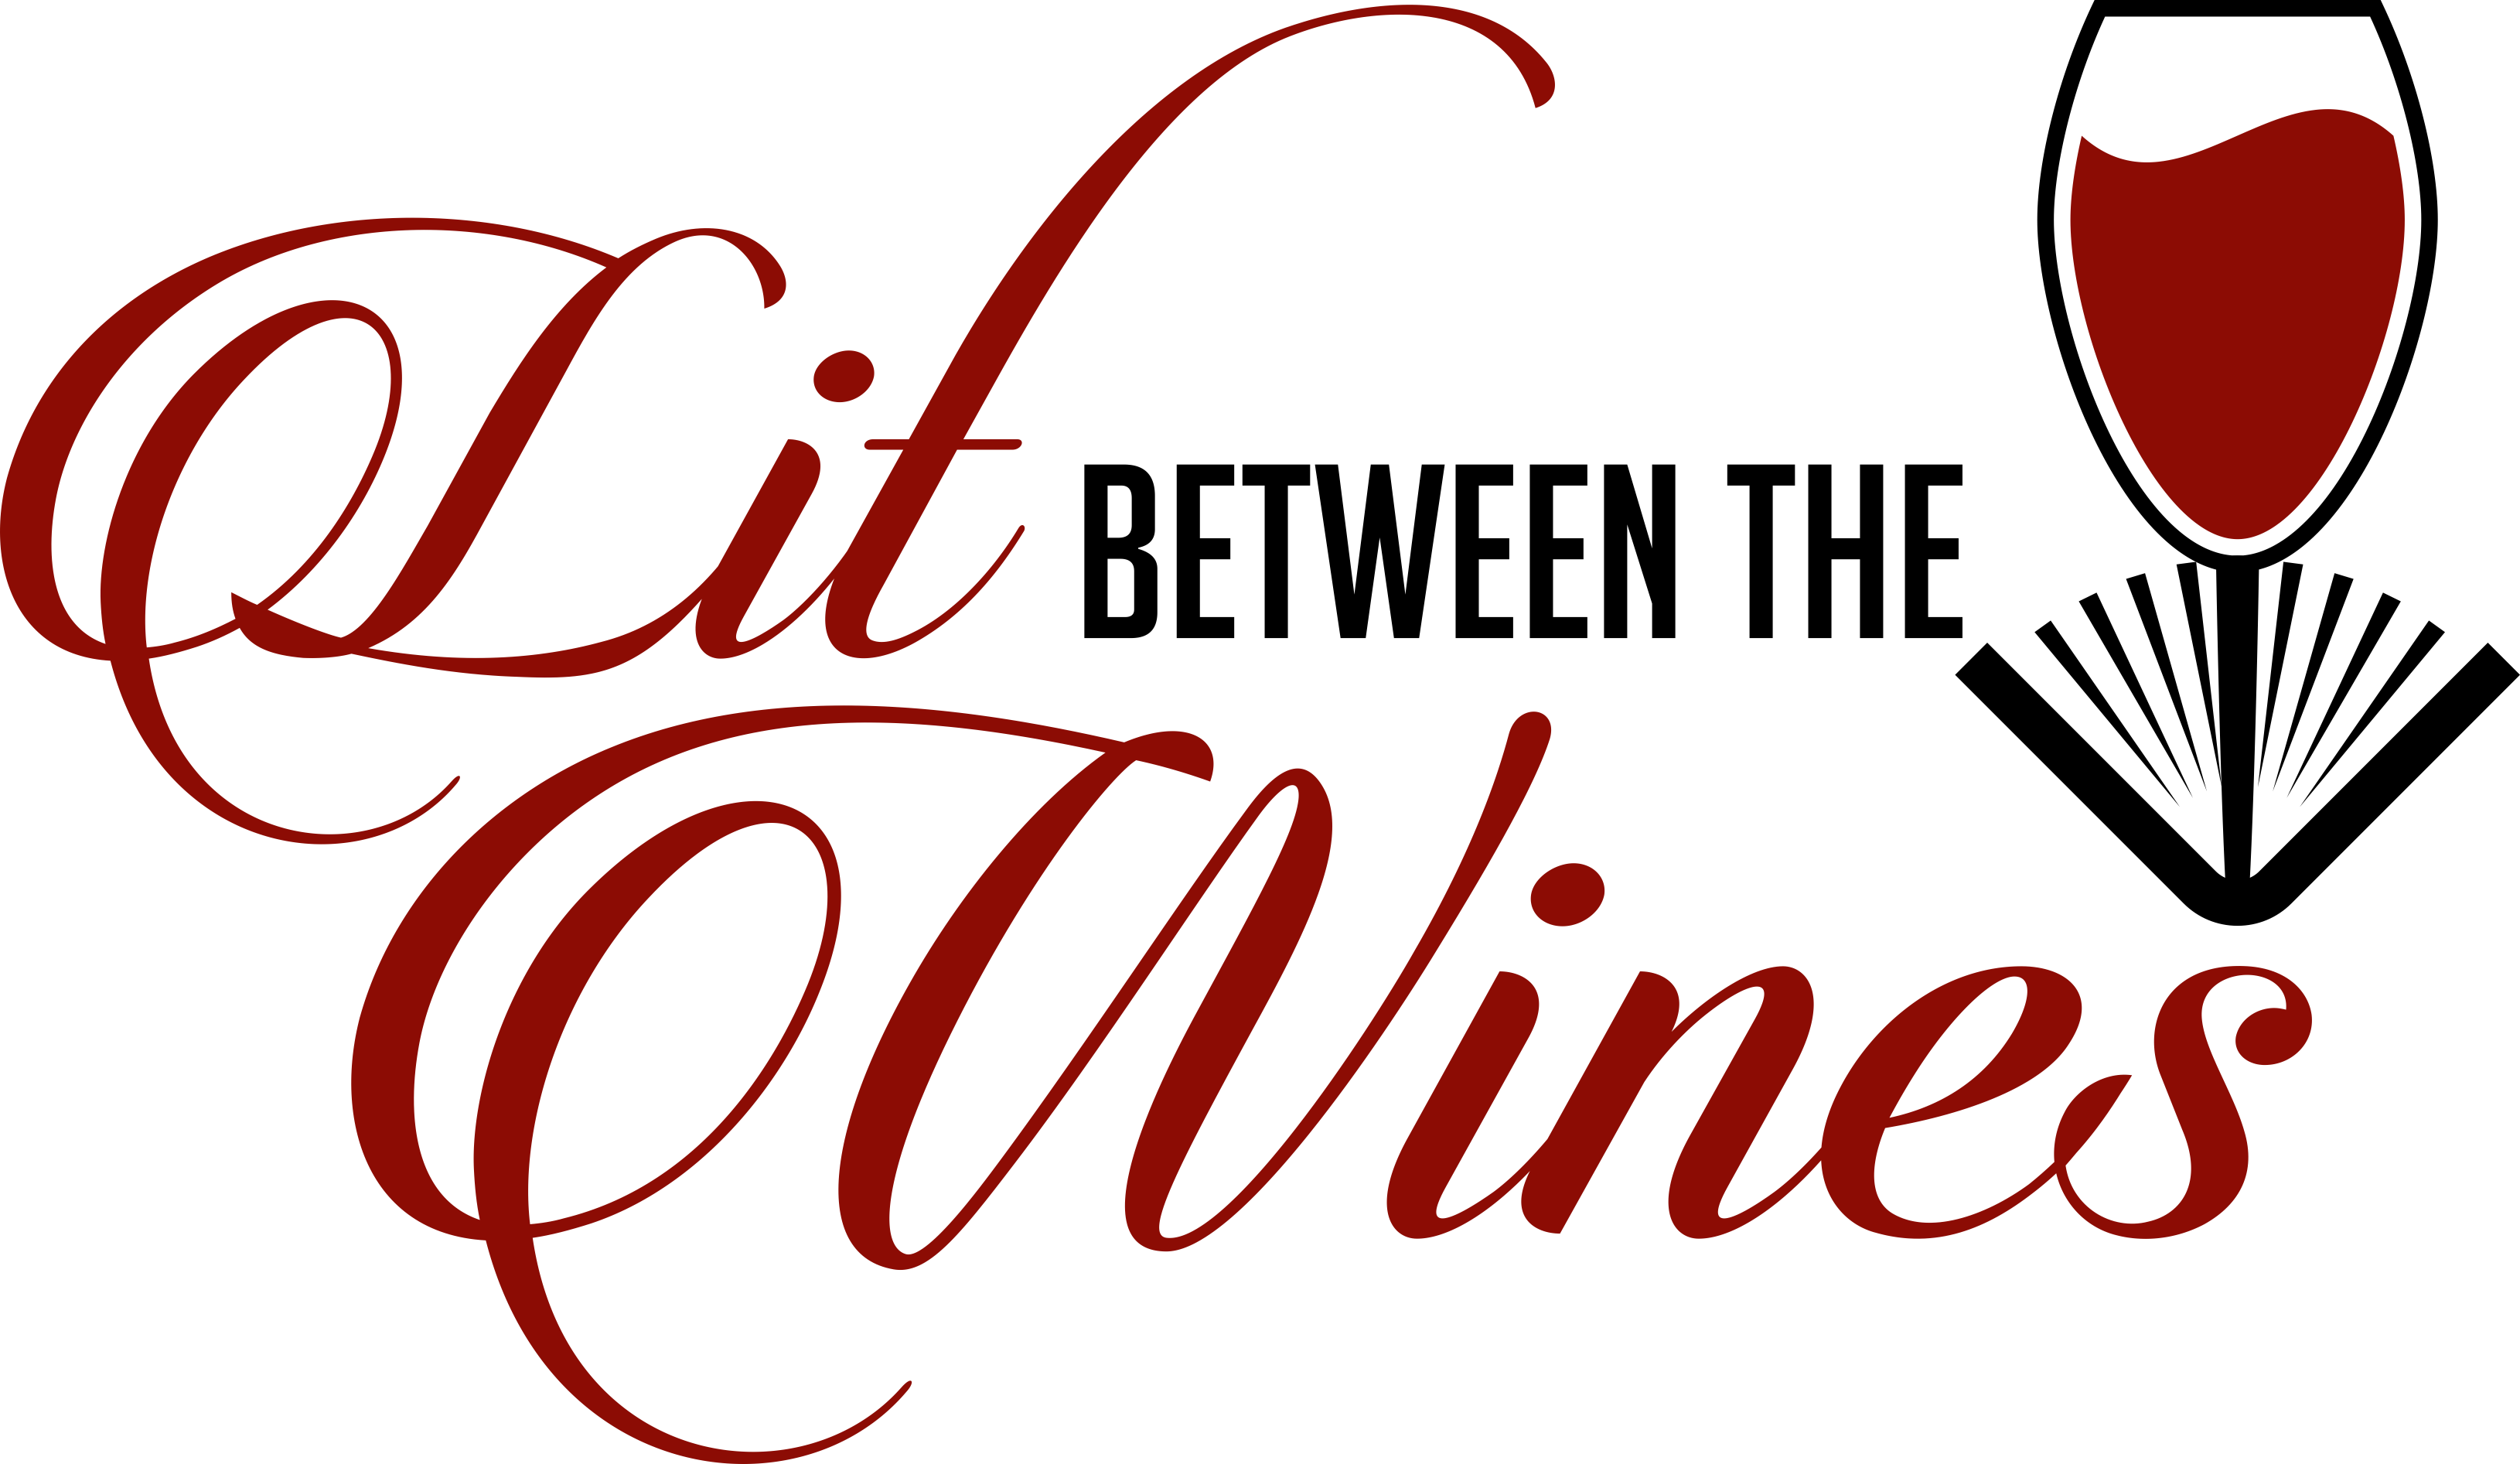 Lit Between the Wines